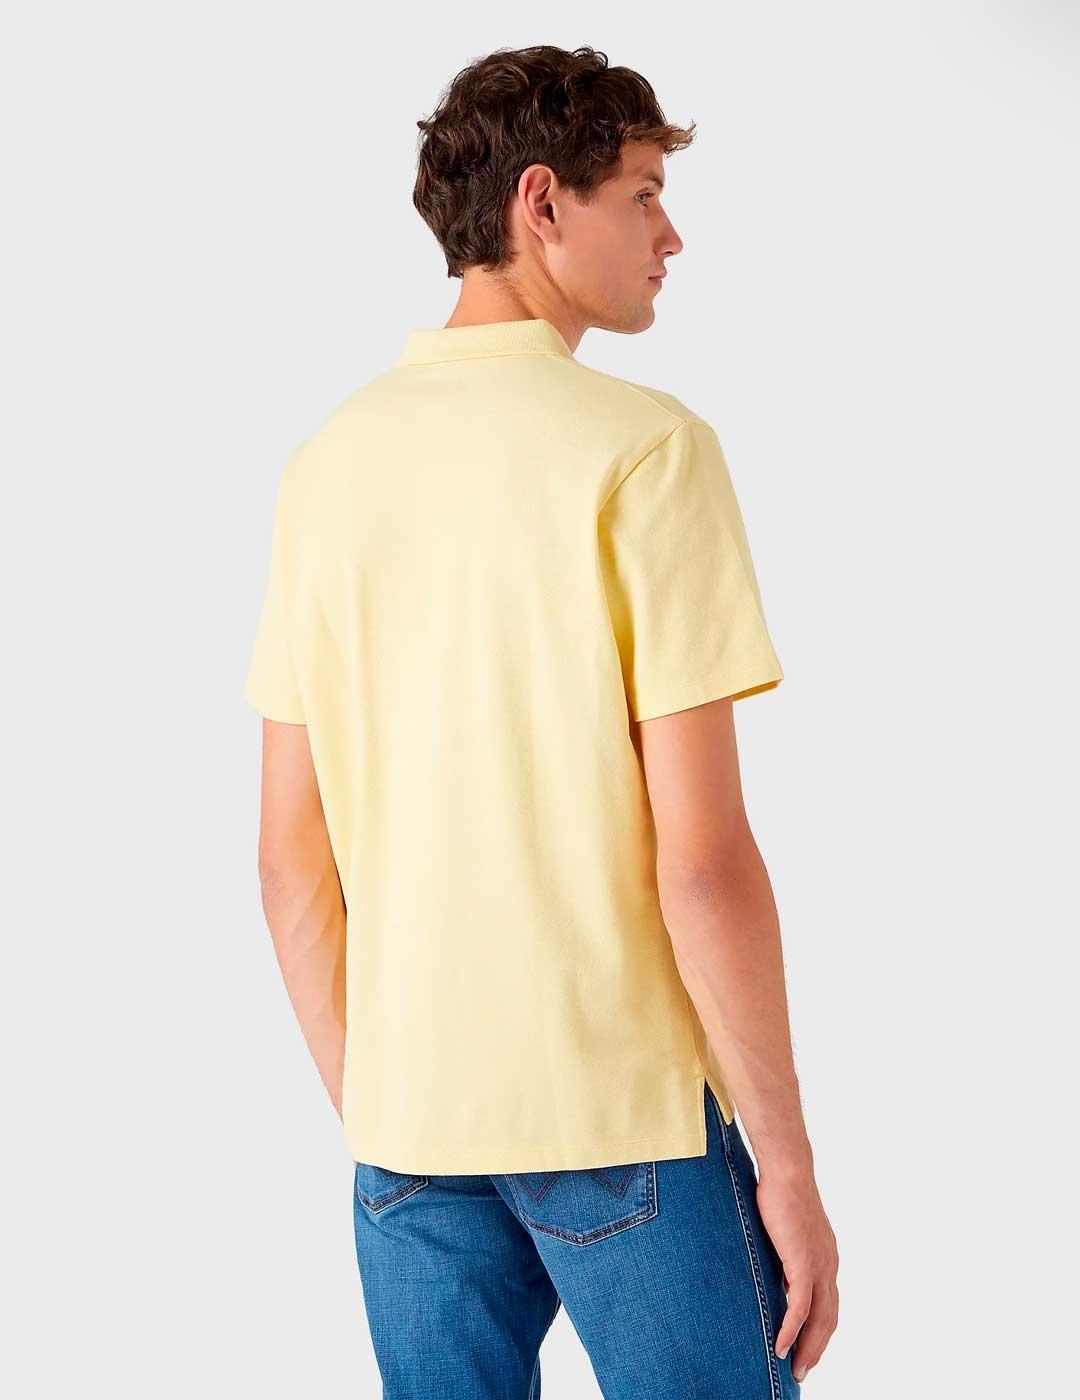 Polo Wrangler Shirt amarillo para hombre